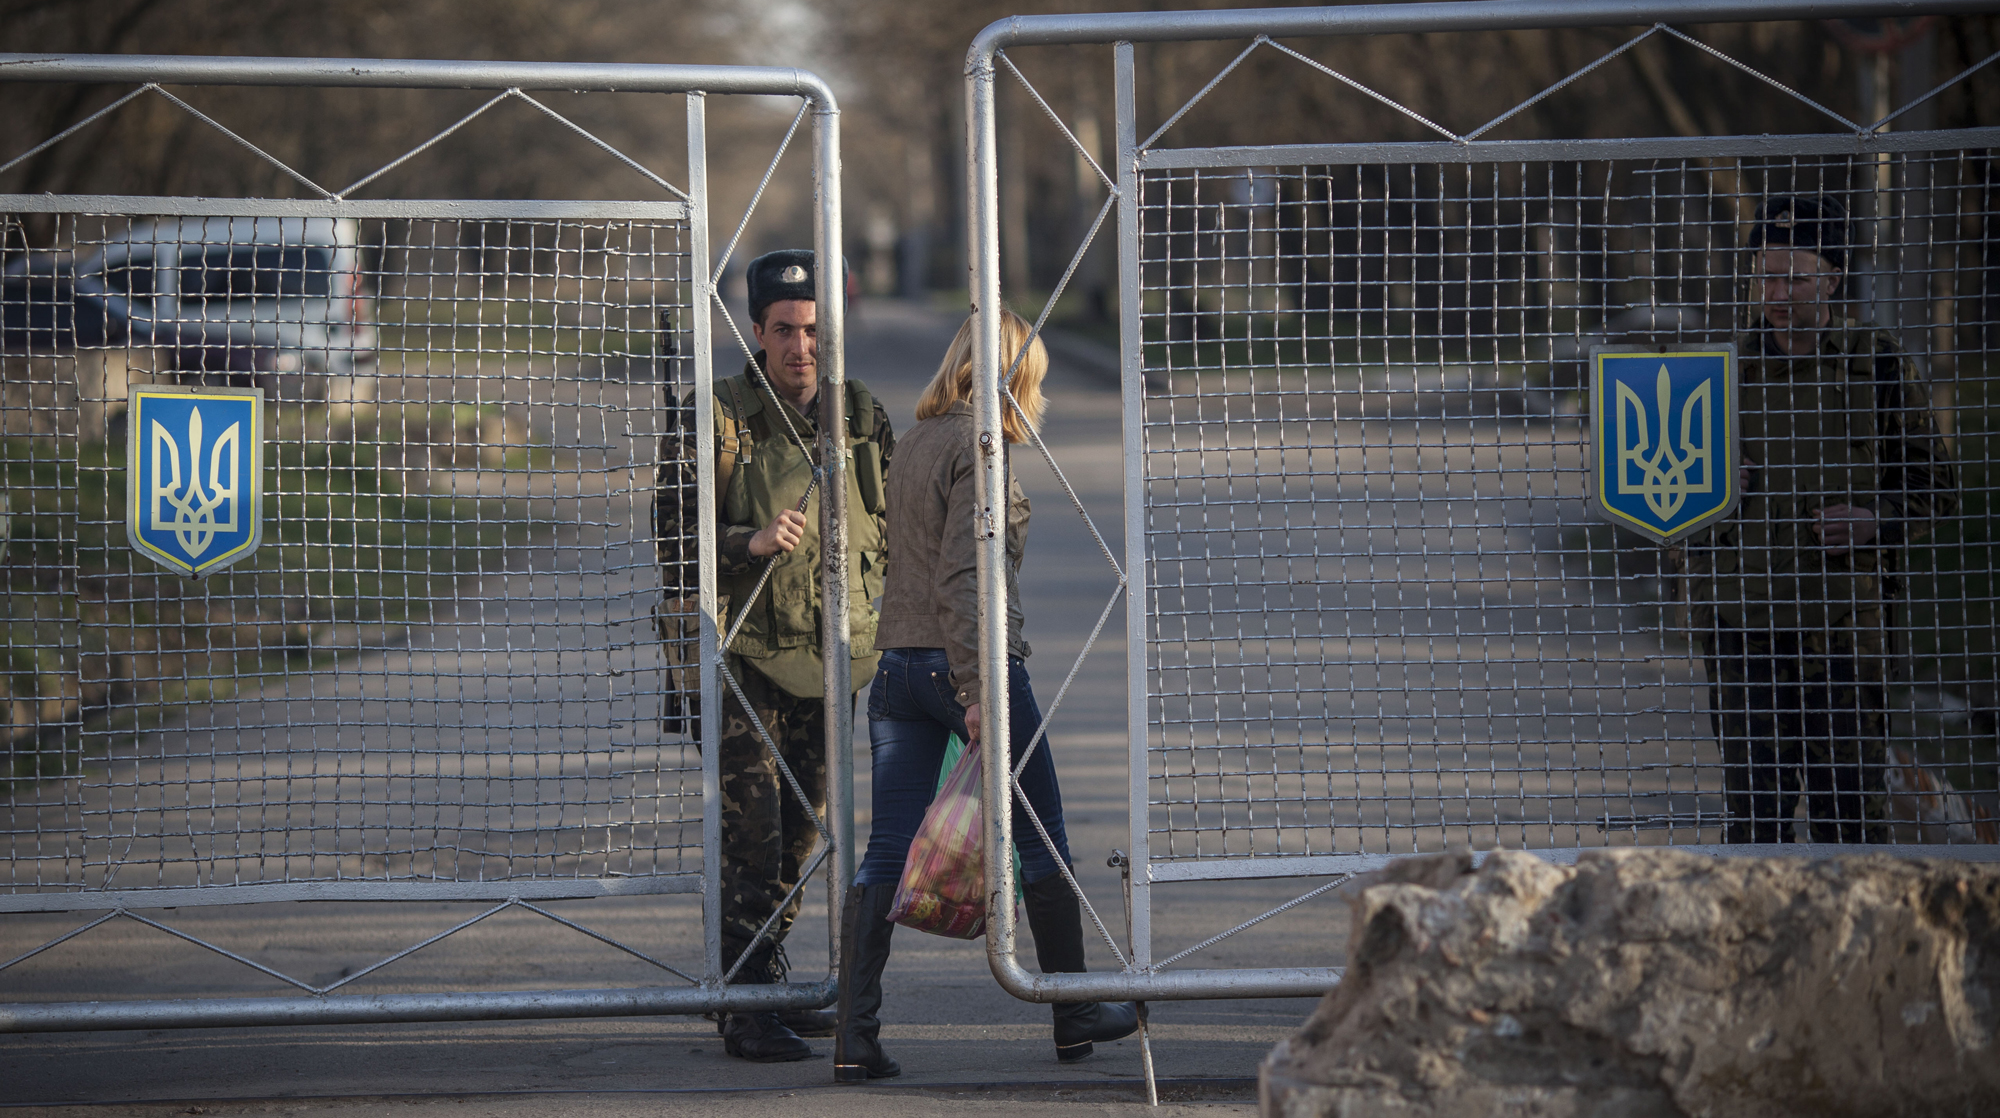 Что случилось на границе с украиной